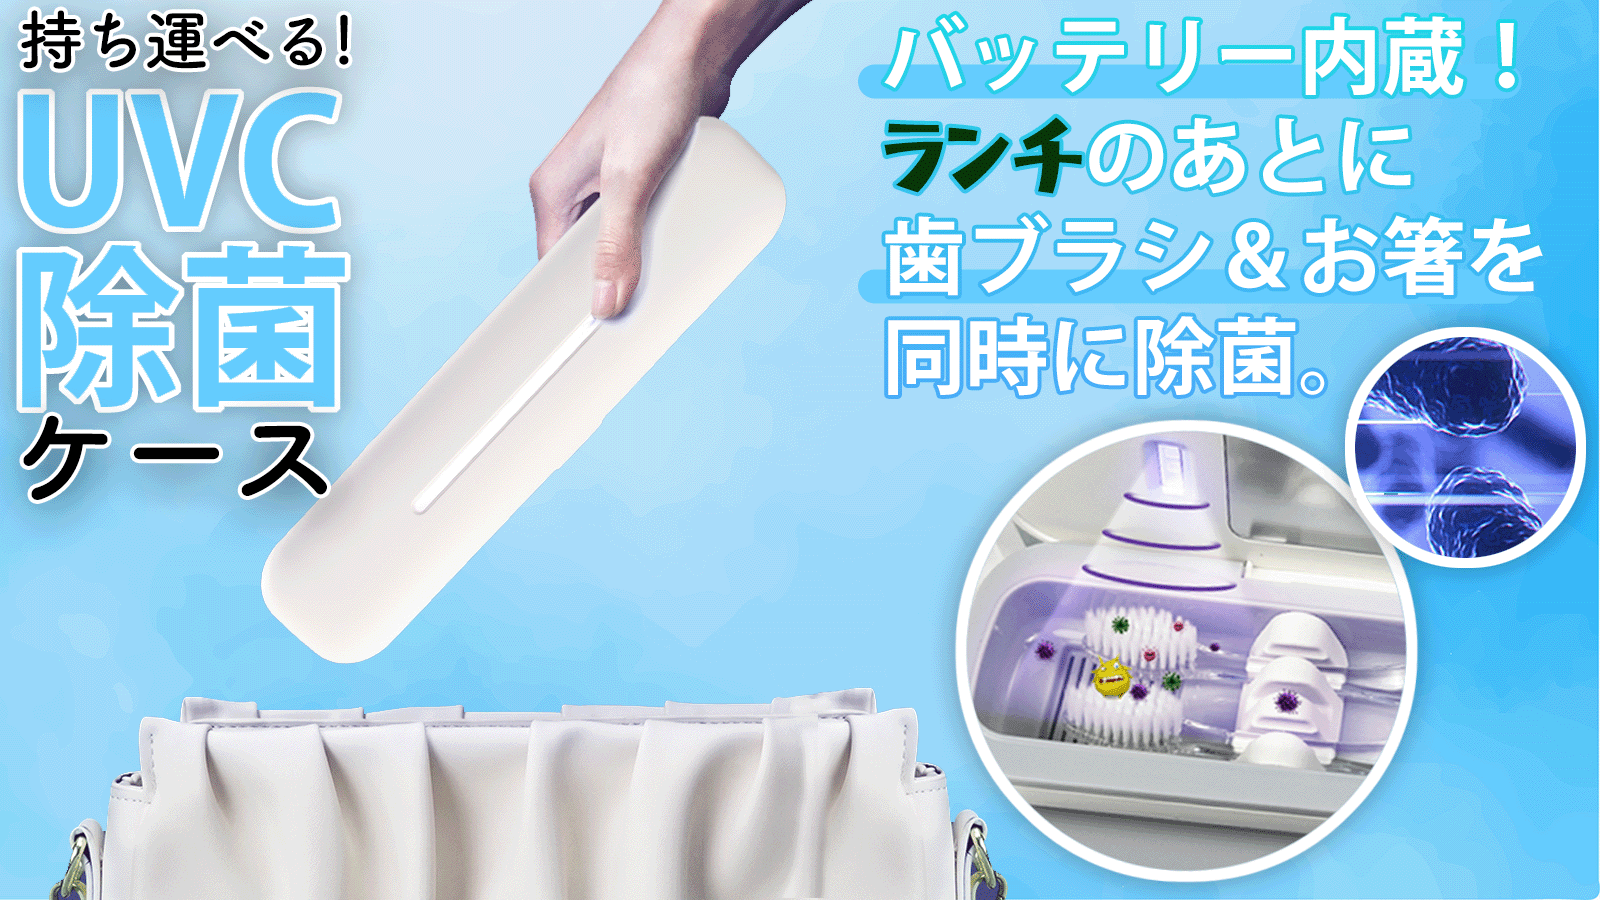 歯ブラシやマイ箸の除菌ができる持ち運び可能な
「UVC除菌ケース」 Makuakeにて先行予約販売を開始